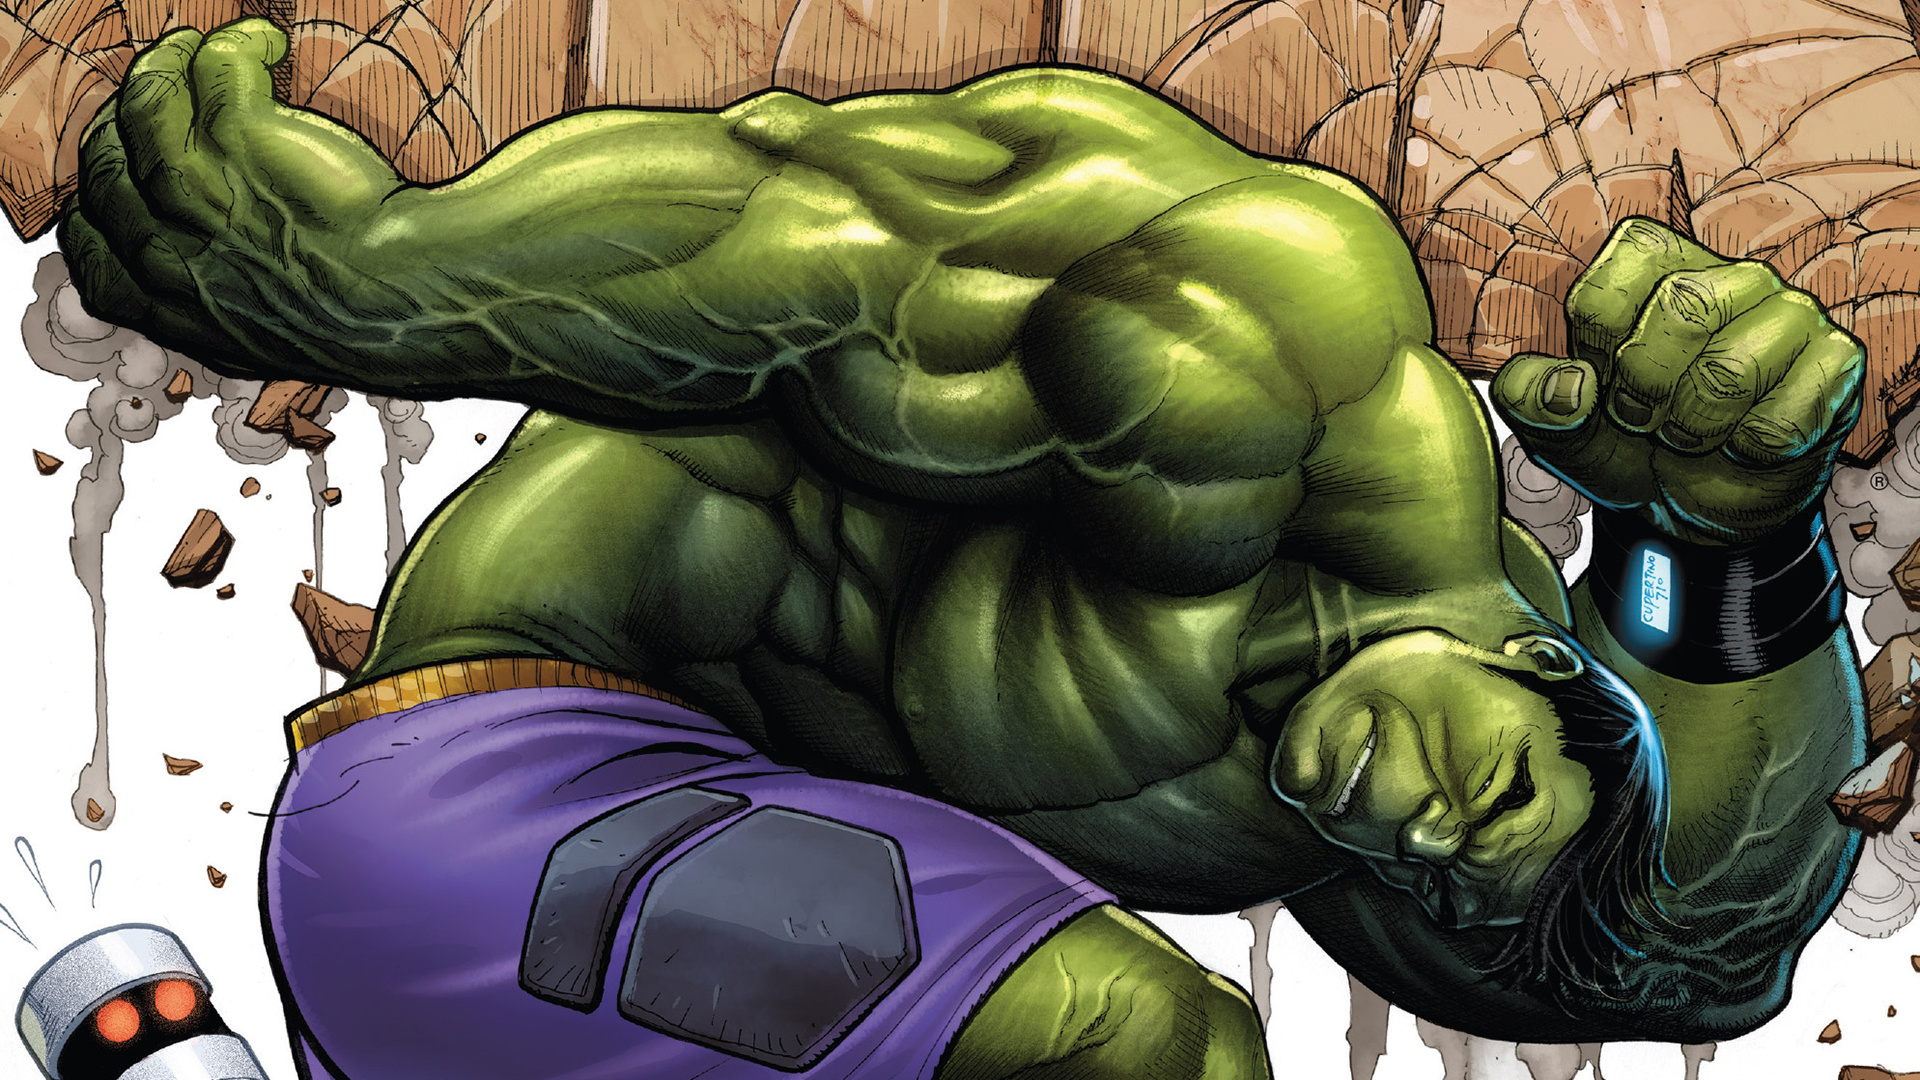 Incredible Hulk, Cool pictures, Comic book hero, Powerful muscles, 1920x1080 Full HD Desktop